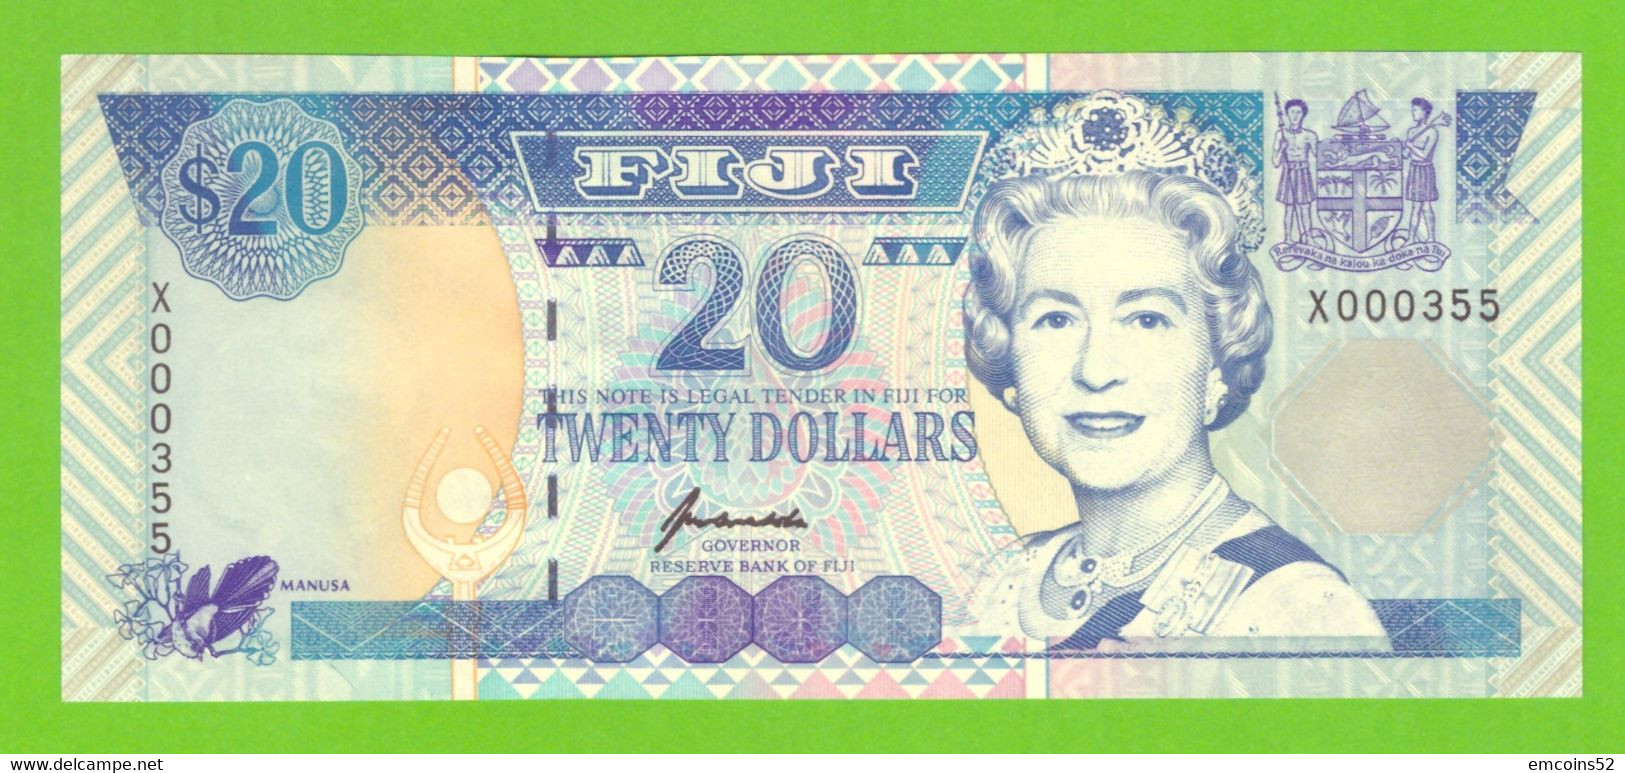 FIJI 20 DOLLARS 1996  P-99a UNC  NUMBER X000355 - Fidji